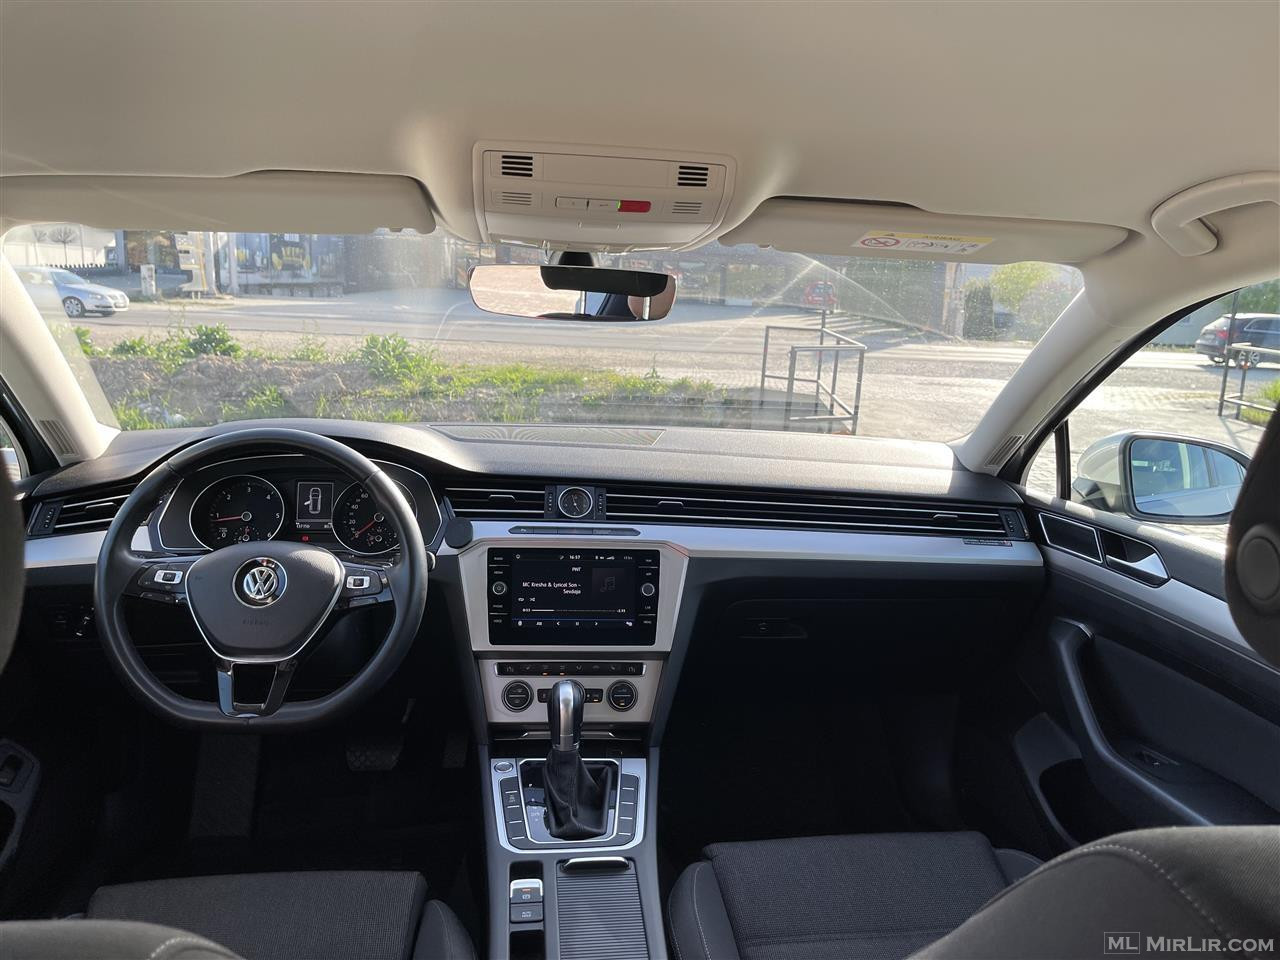 VW PASSAT B8 2019 190PS 4MOTION